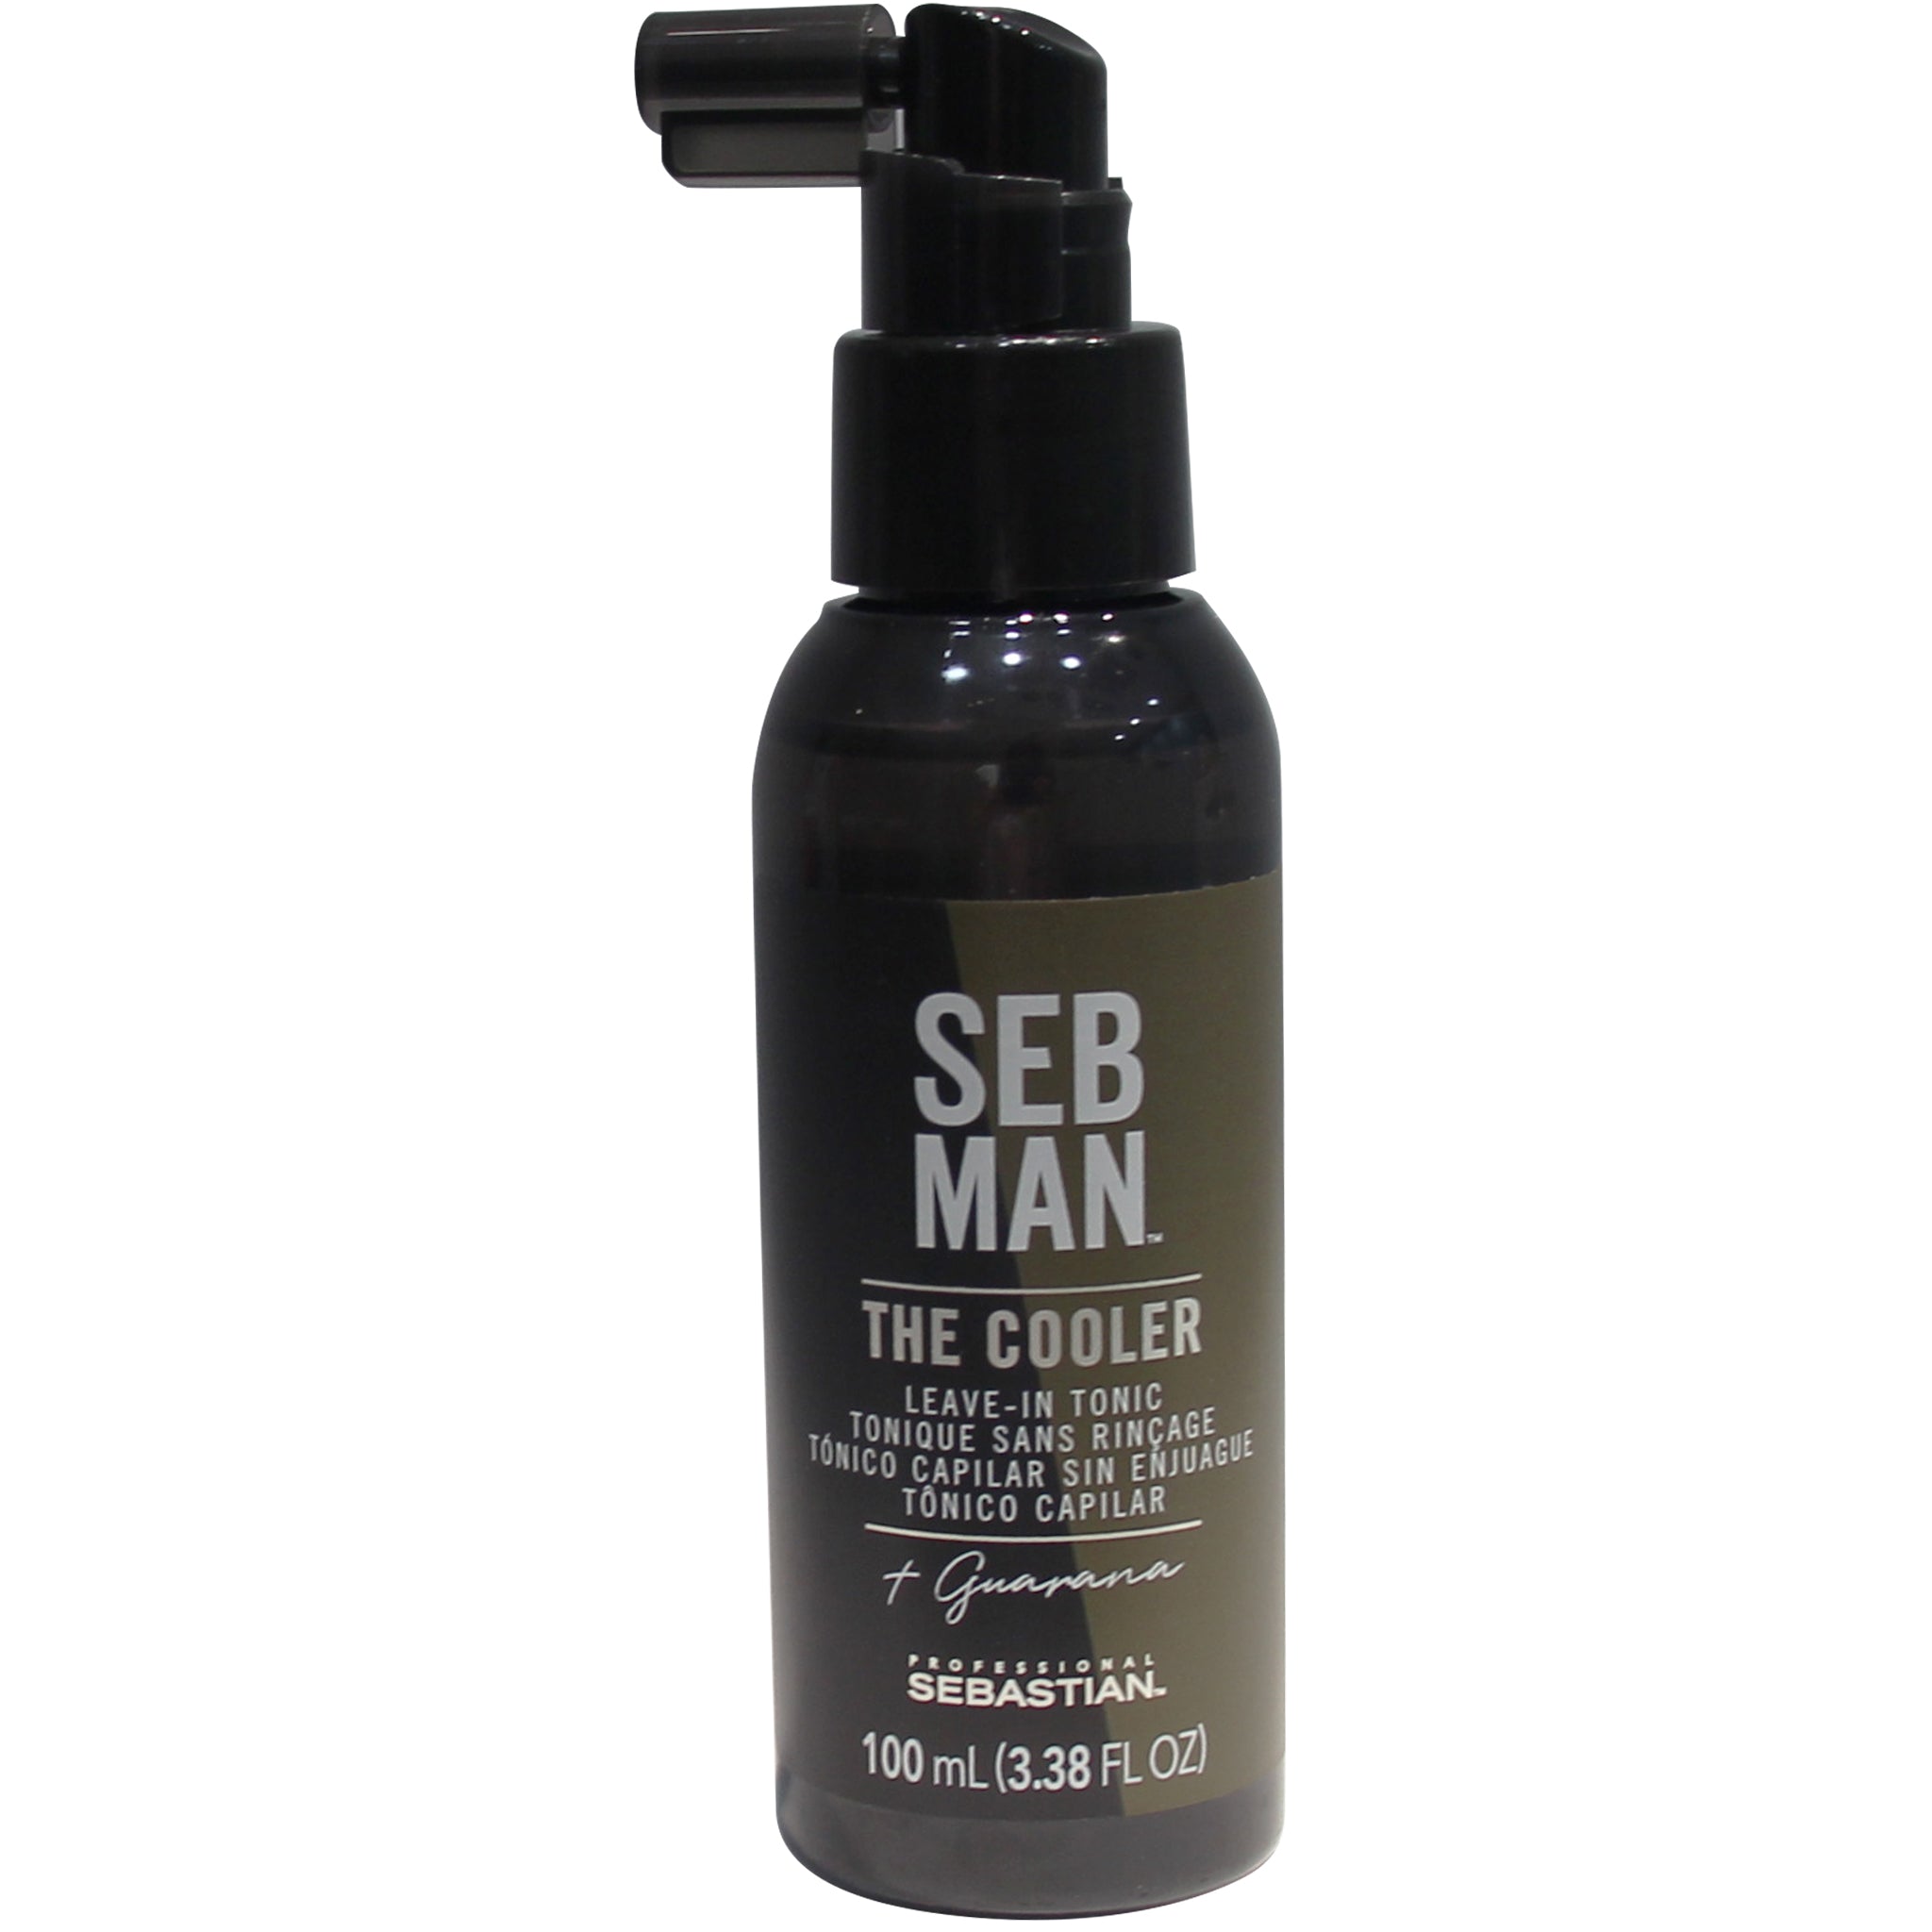 The cooler Seb Man Tónico sin enjuague que estimula la piel cabelluda que aparto sensación refrescante. 